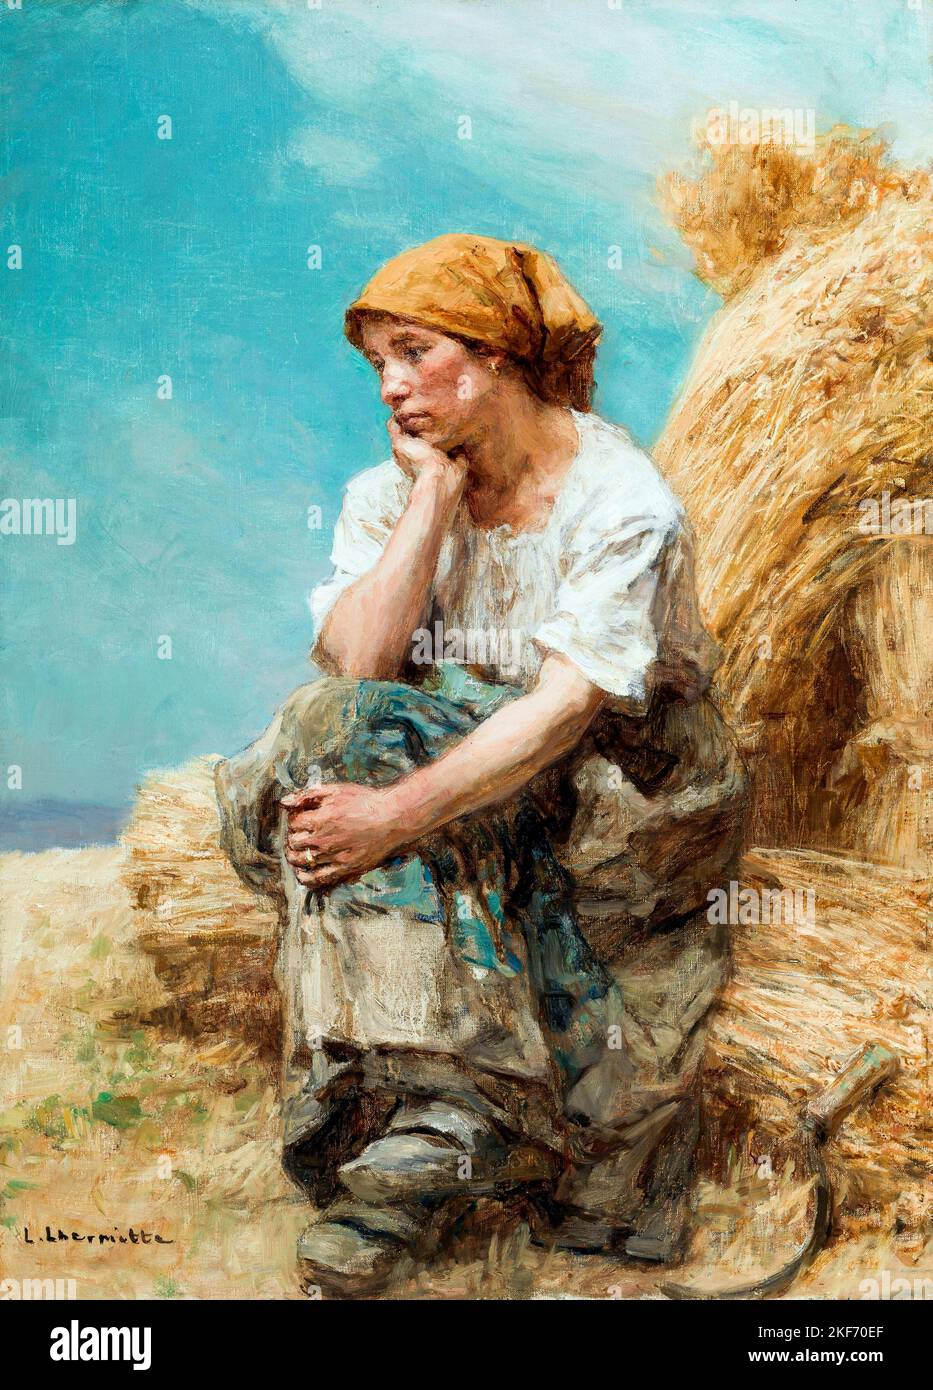 Paysanne reposant par l'artiste français Léon Augustin Lhermitte (1844-1925), huile sur toile, 1903 Banque D'Images